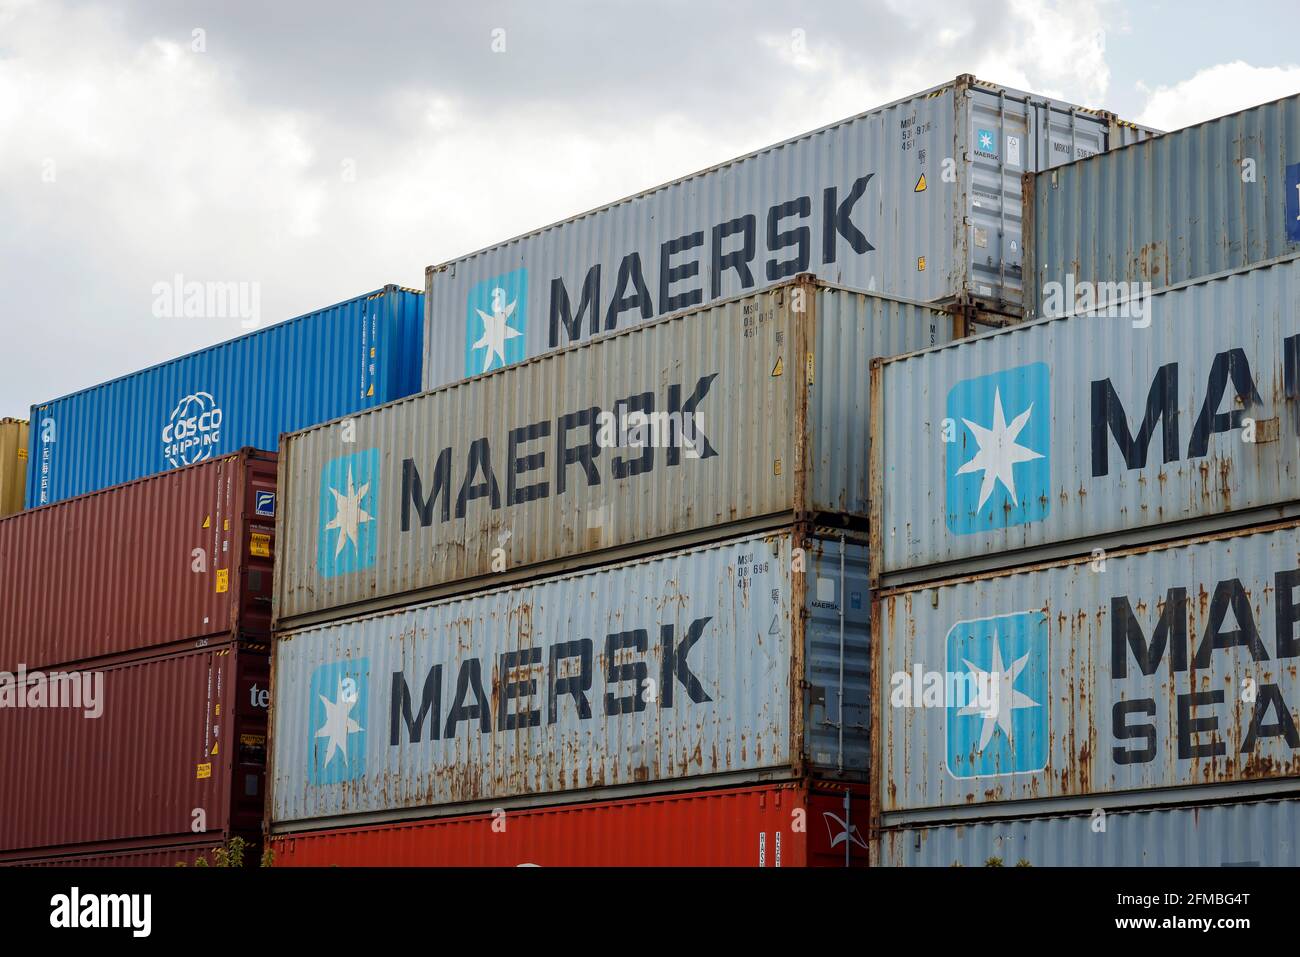 Cologne, Rhénanie-du-Nord-Westphalie, Allemagne - Maersk Container, Maersk Line est la plus grande compagnie de transport de conteneurs au monde, entrepôt de conteneurs au terminal de conteneurs, Port de Cologne Niehl. Banque D'Images